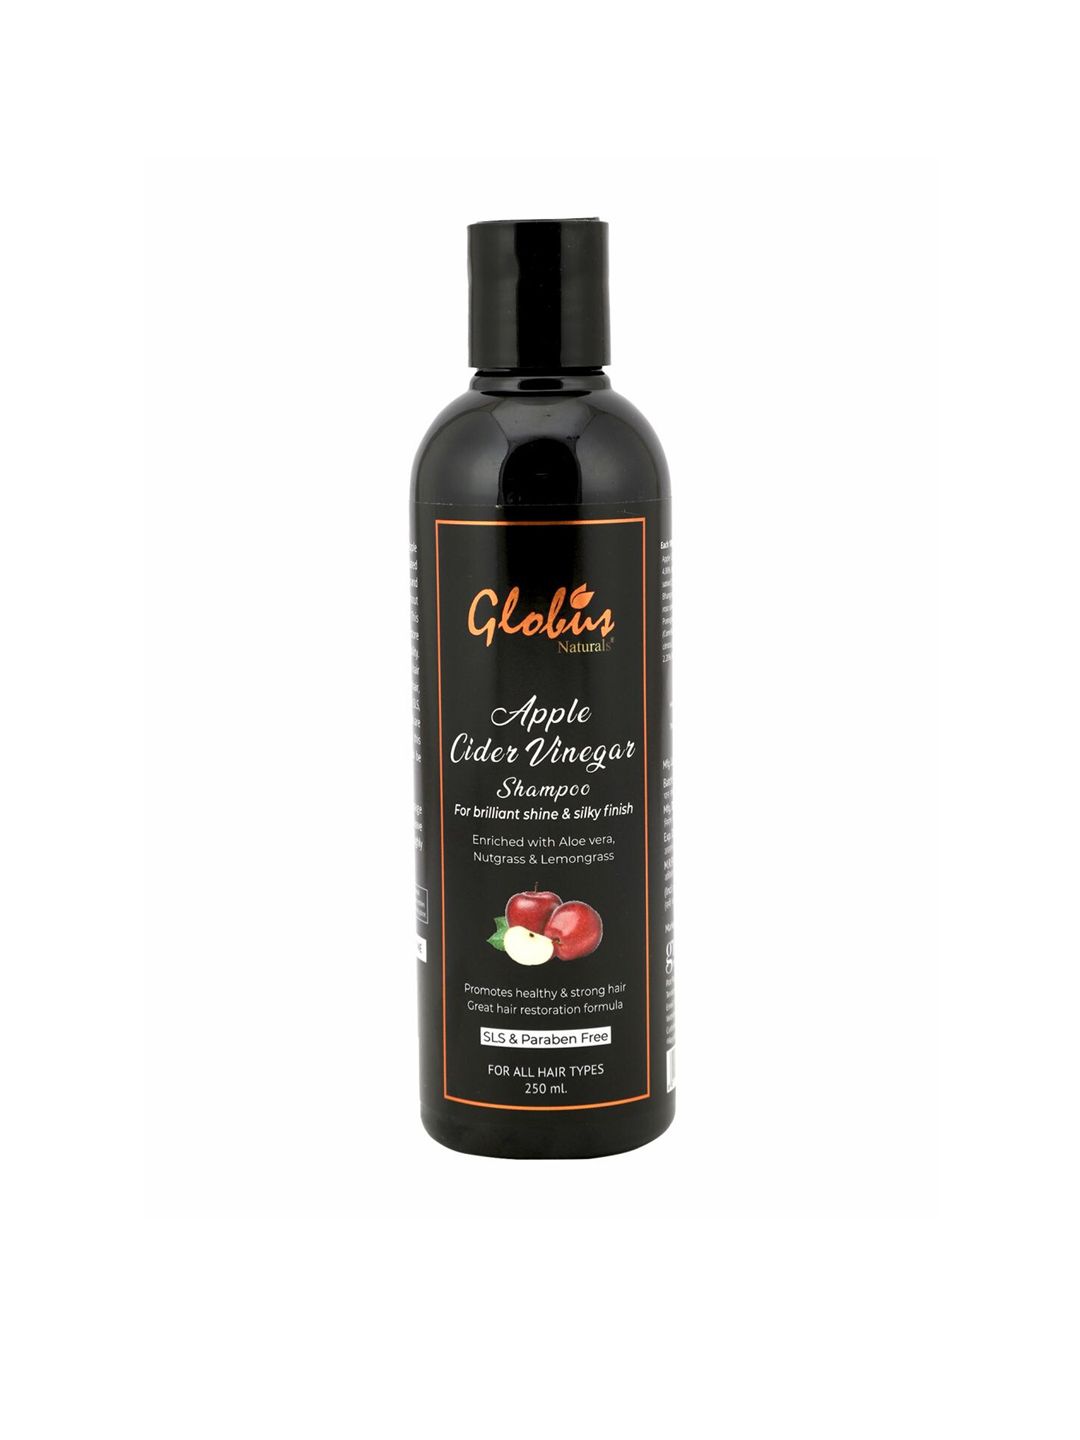 Globus Naturals Apple Cider Vinegar Shampoo 250 ml Price in India